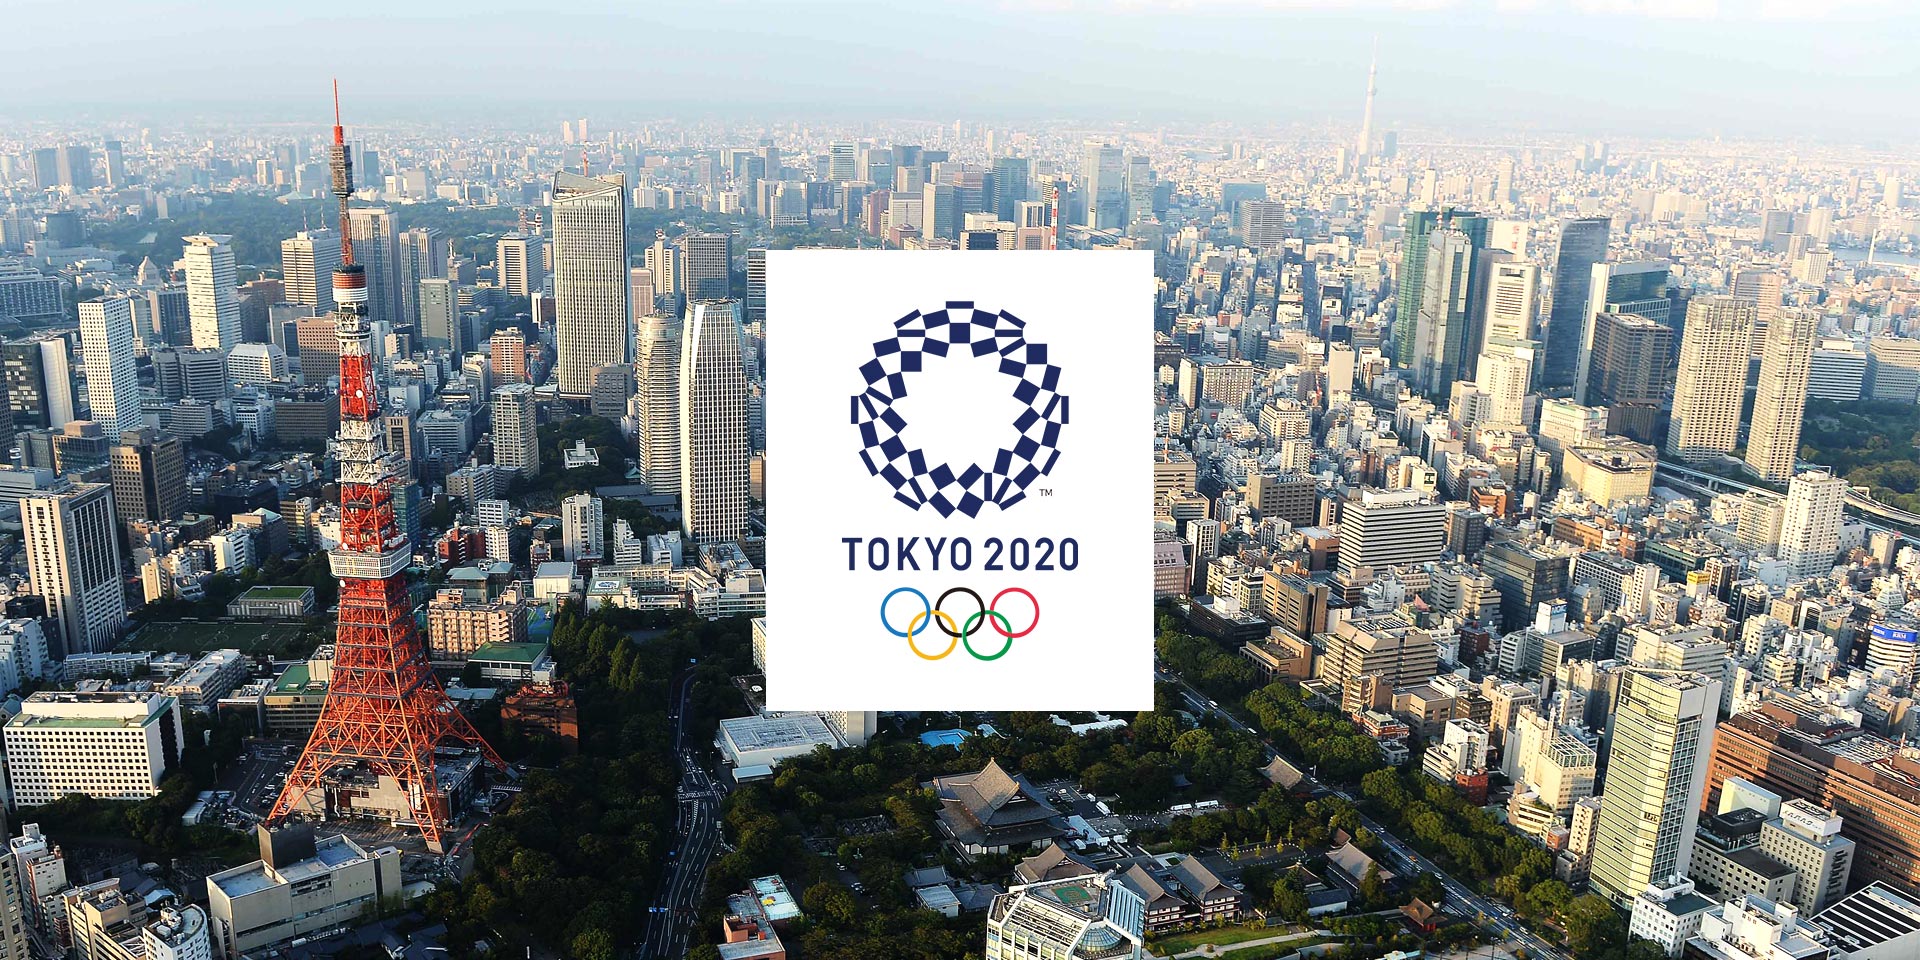 Tokyo 2020 - Organising Committee